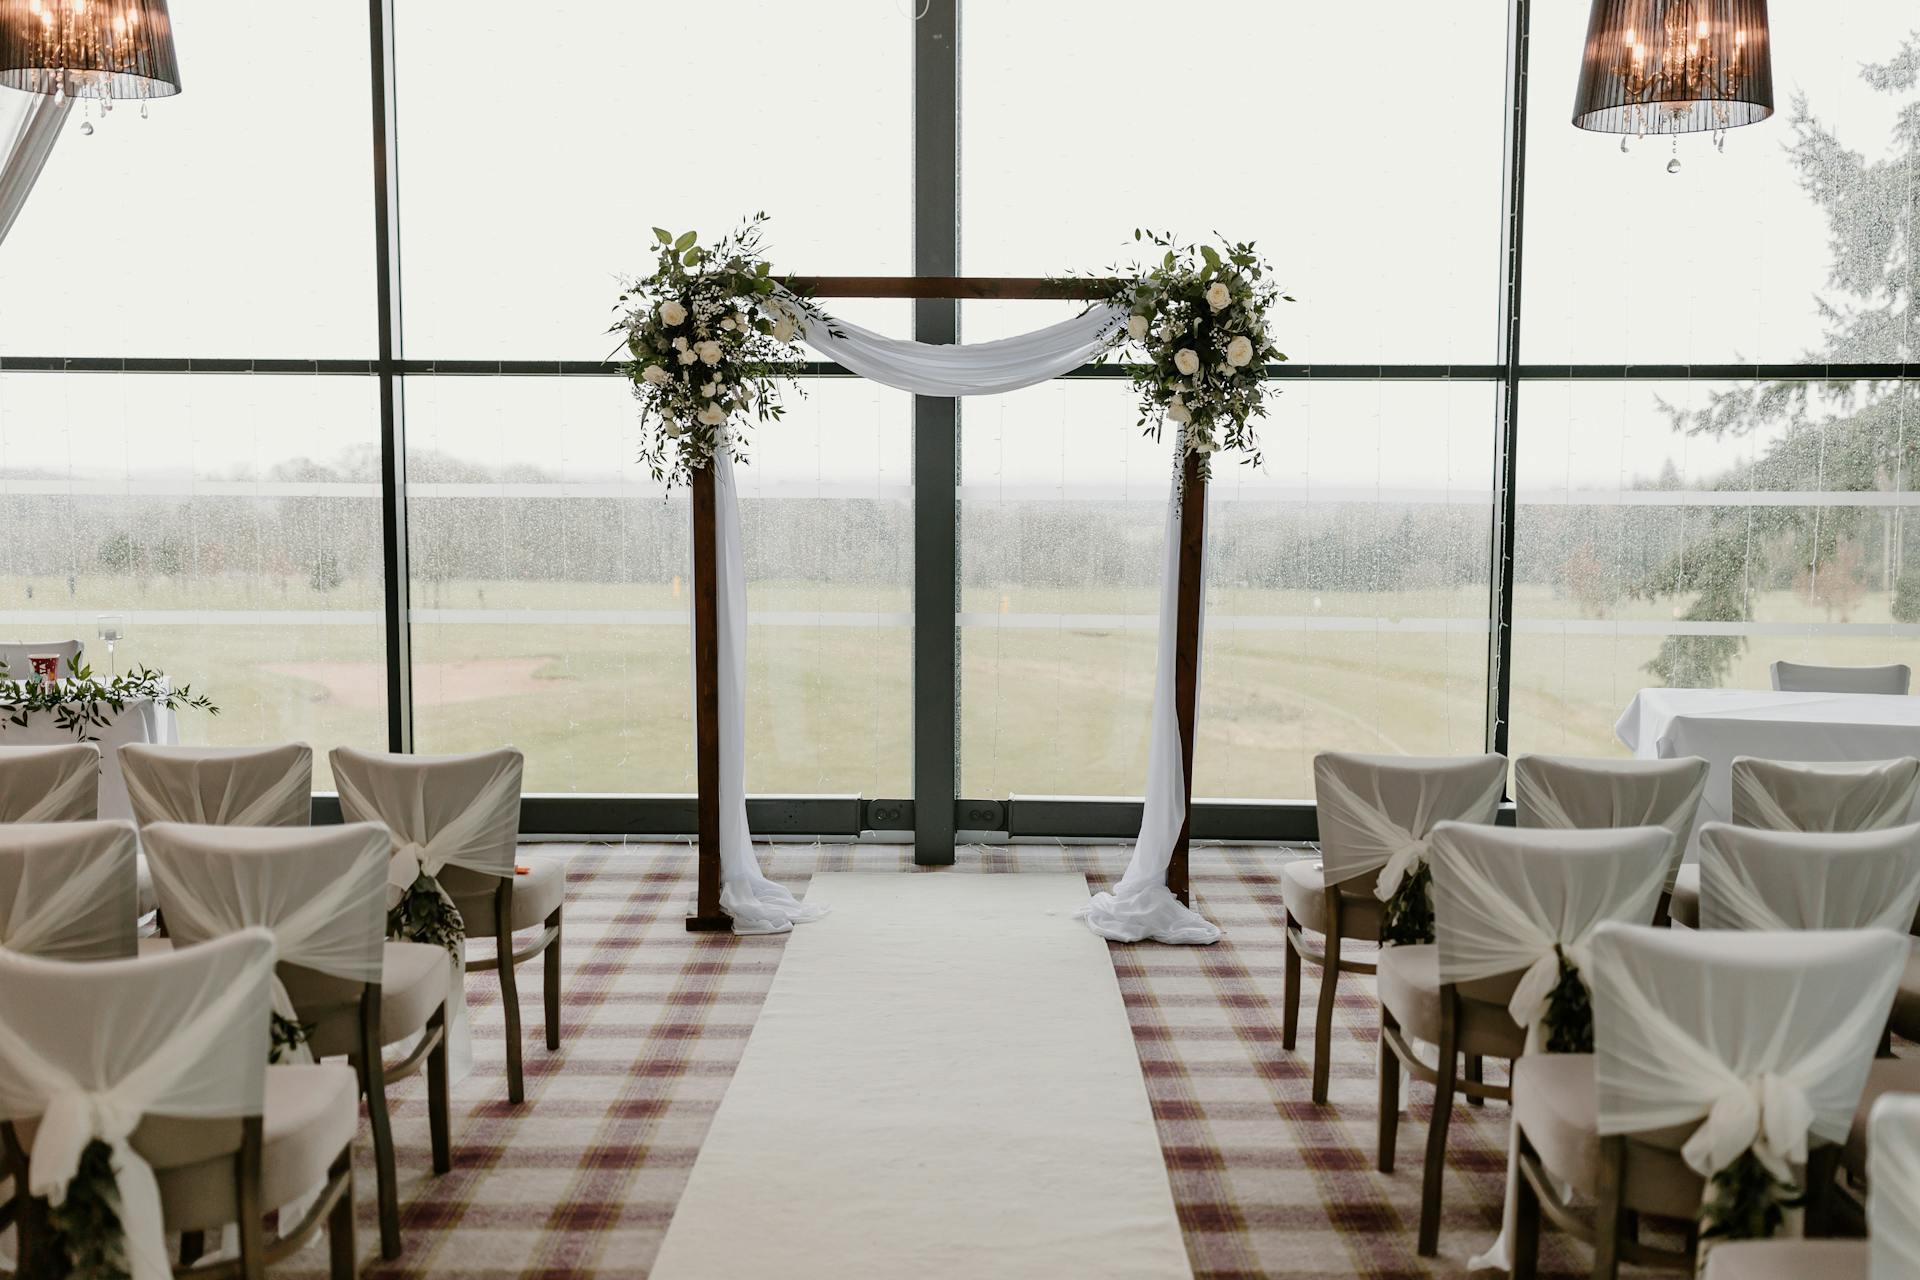 A wedding venue | Source: Pexels